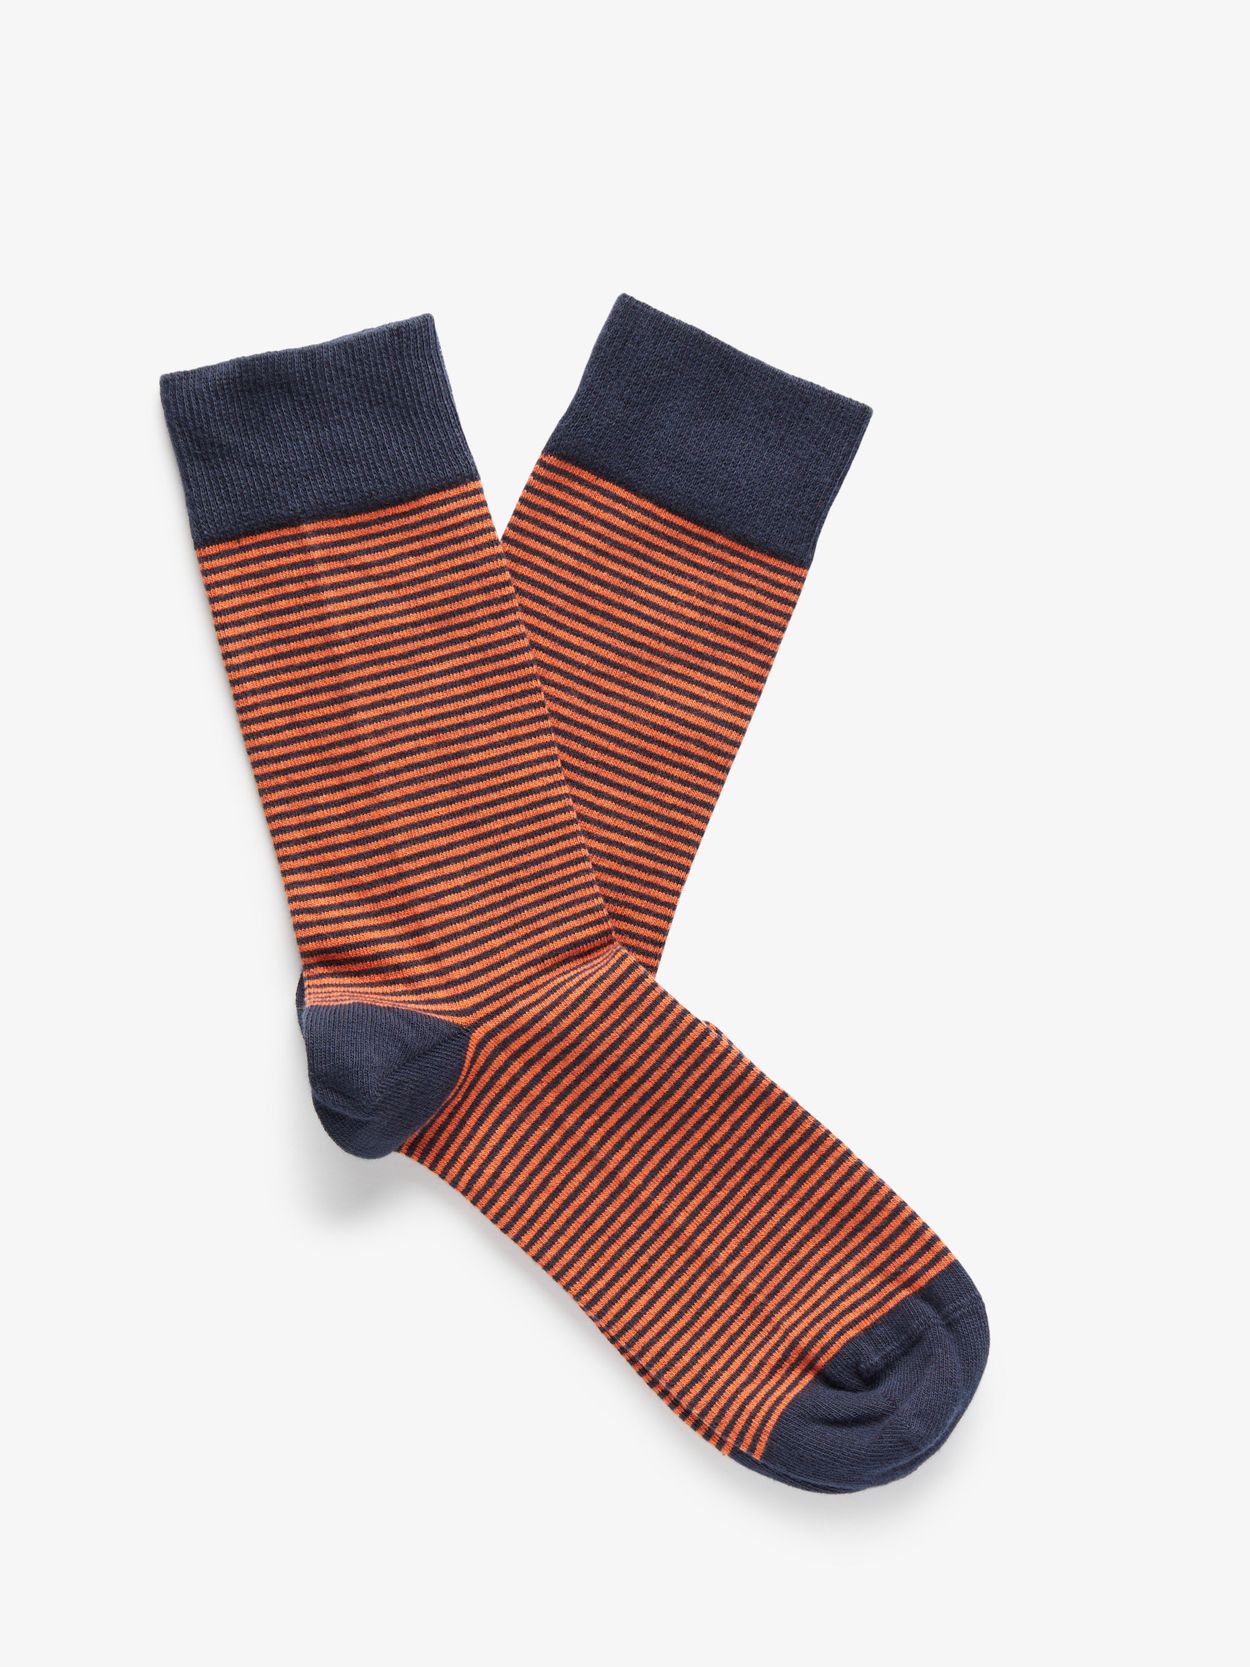 Blue & Orange Socks Almeria